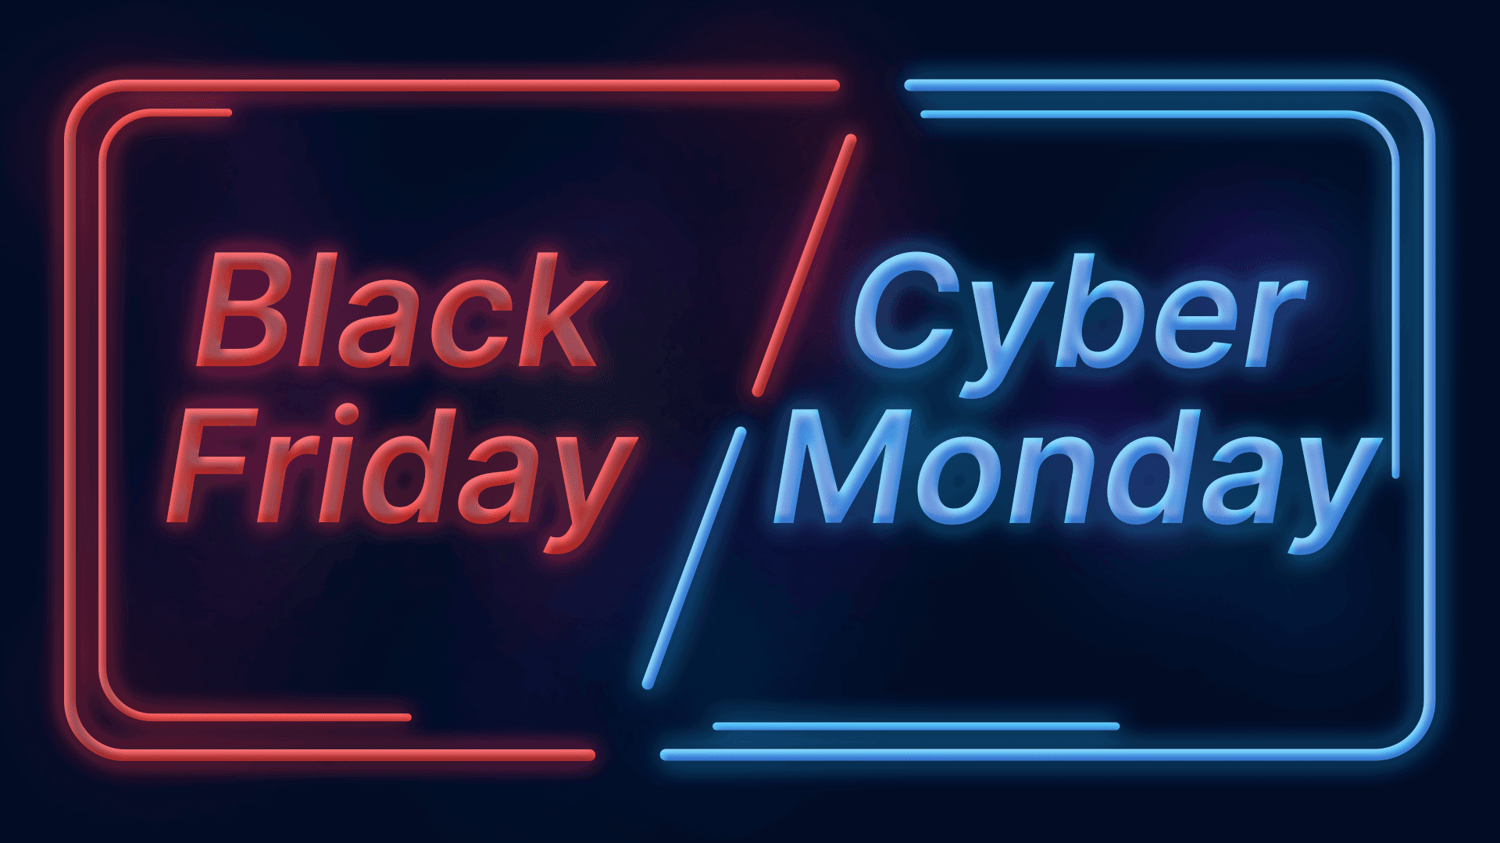 Oferta de Black Friday y Cyber Monday: ahorra un 53% de descuento